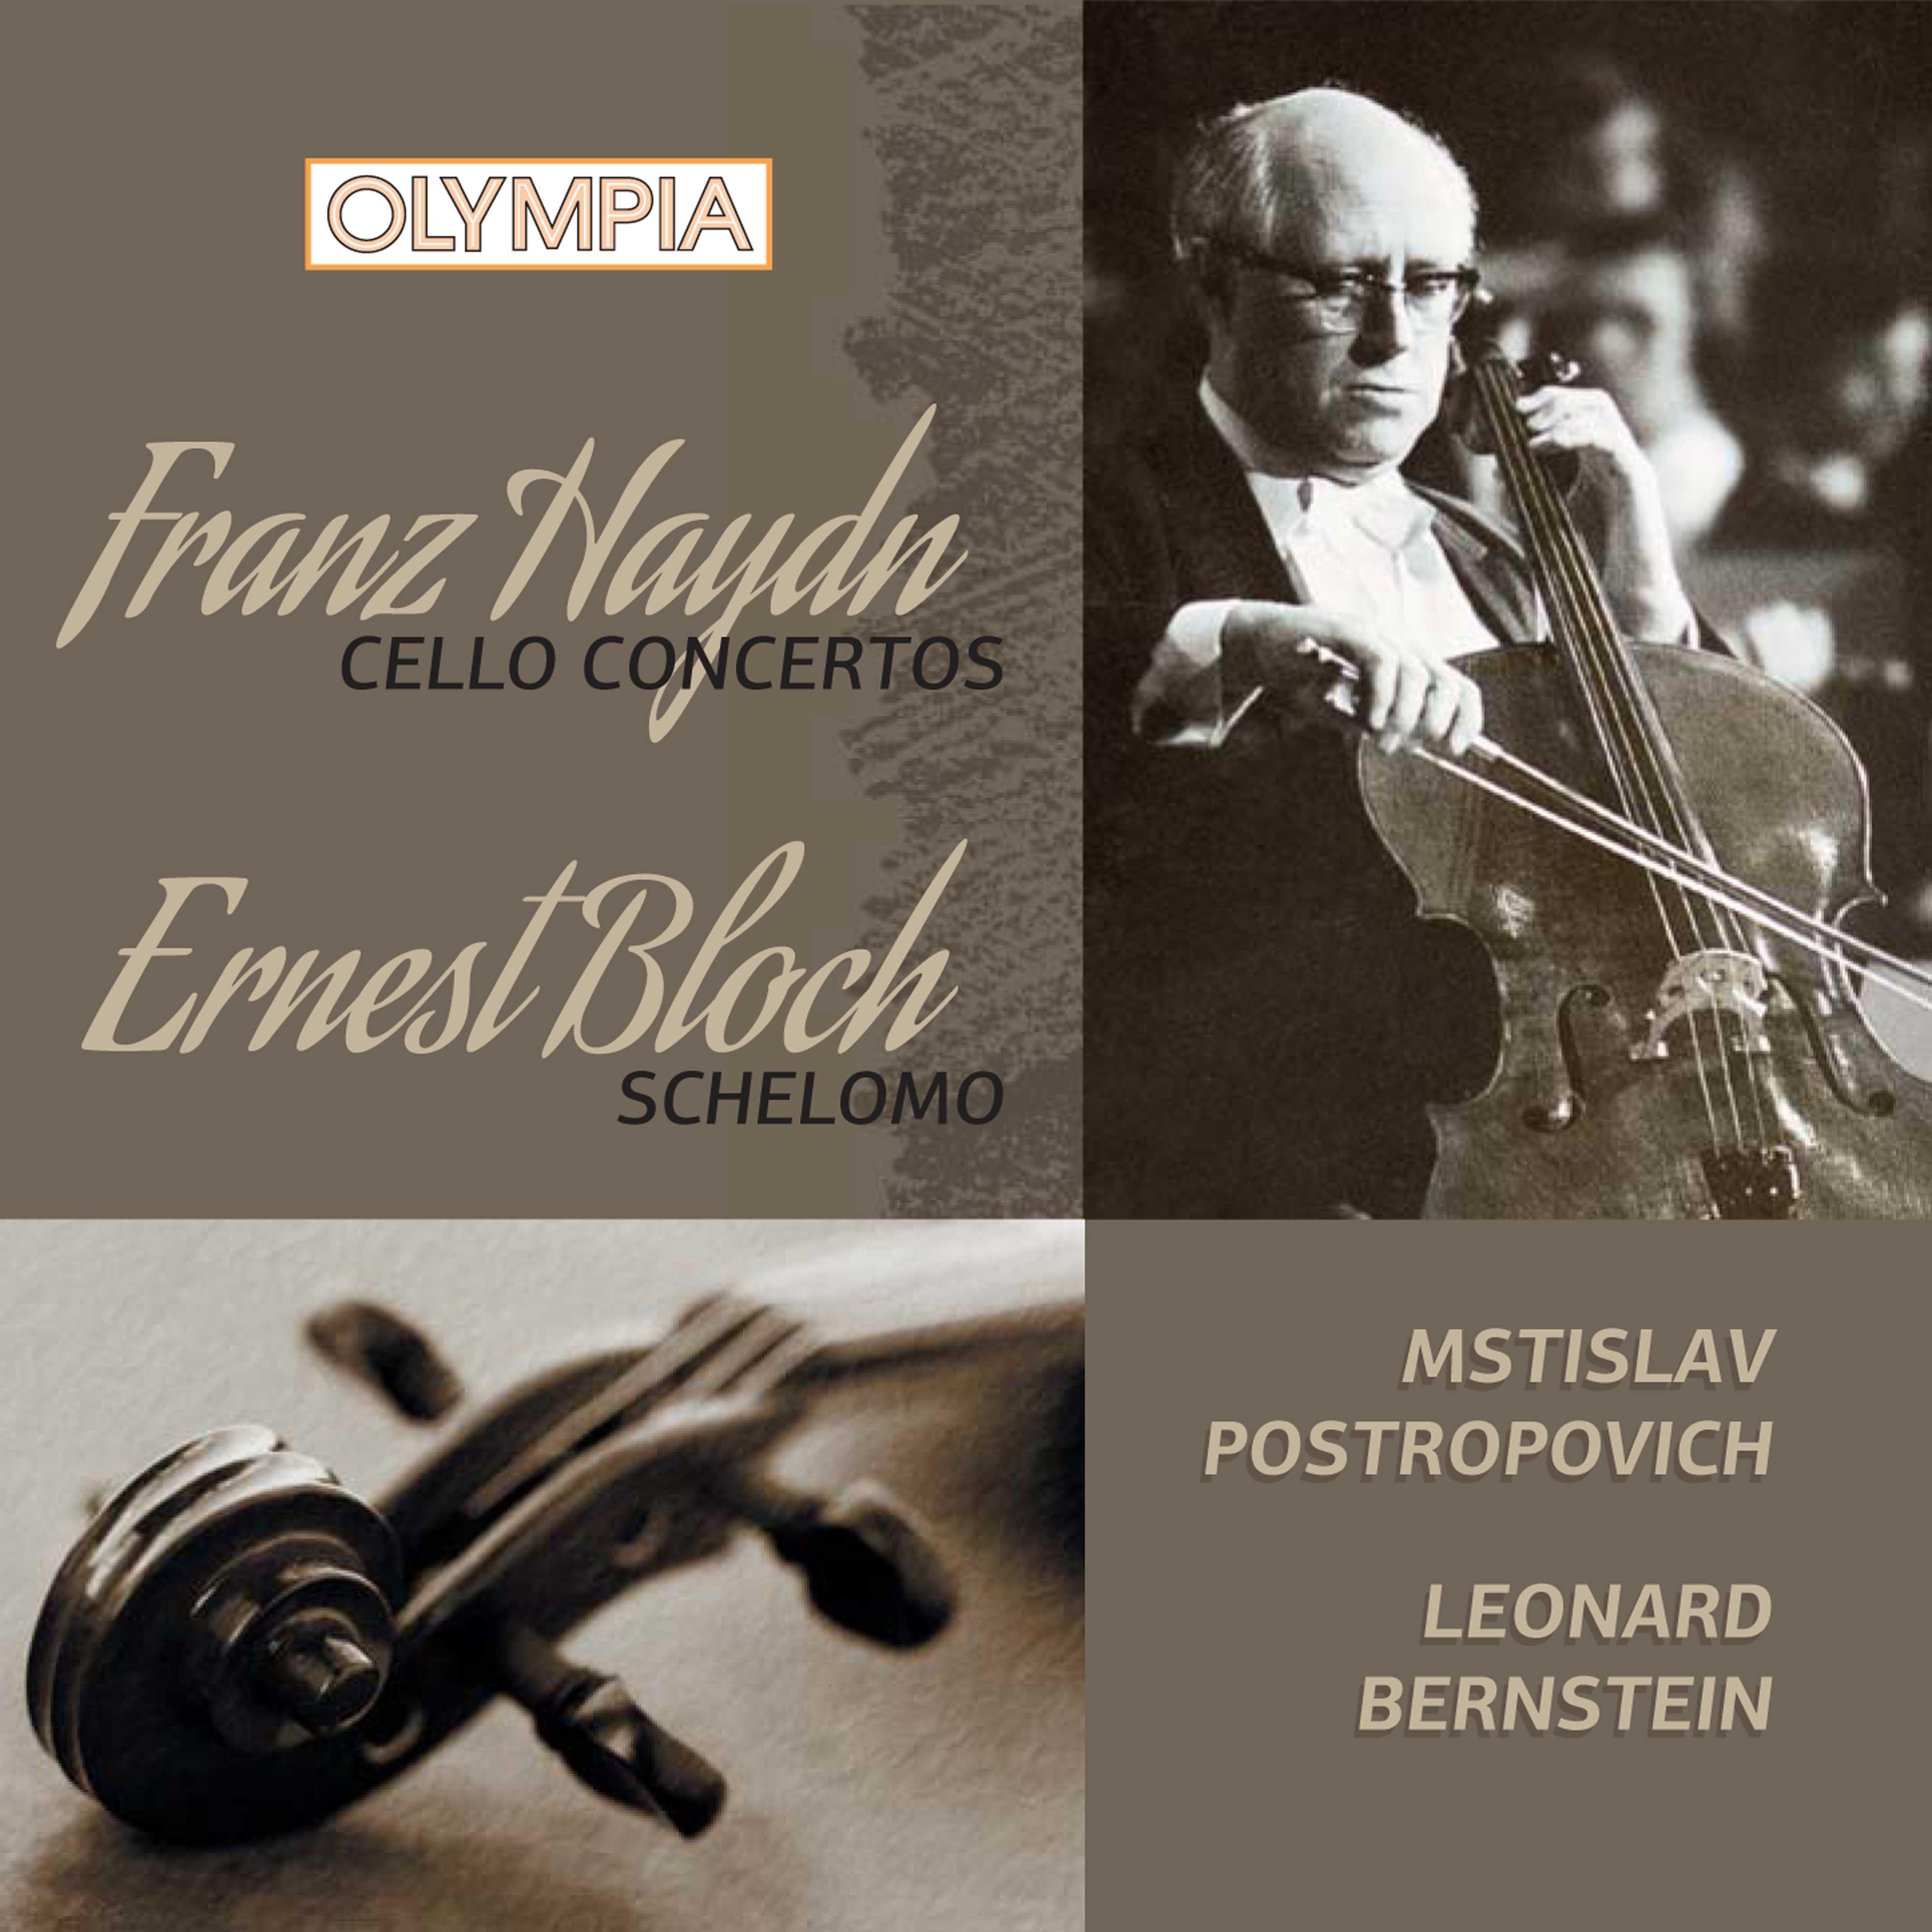 Haydn: Cello concertos - Bloch: Schelomo